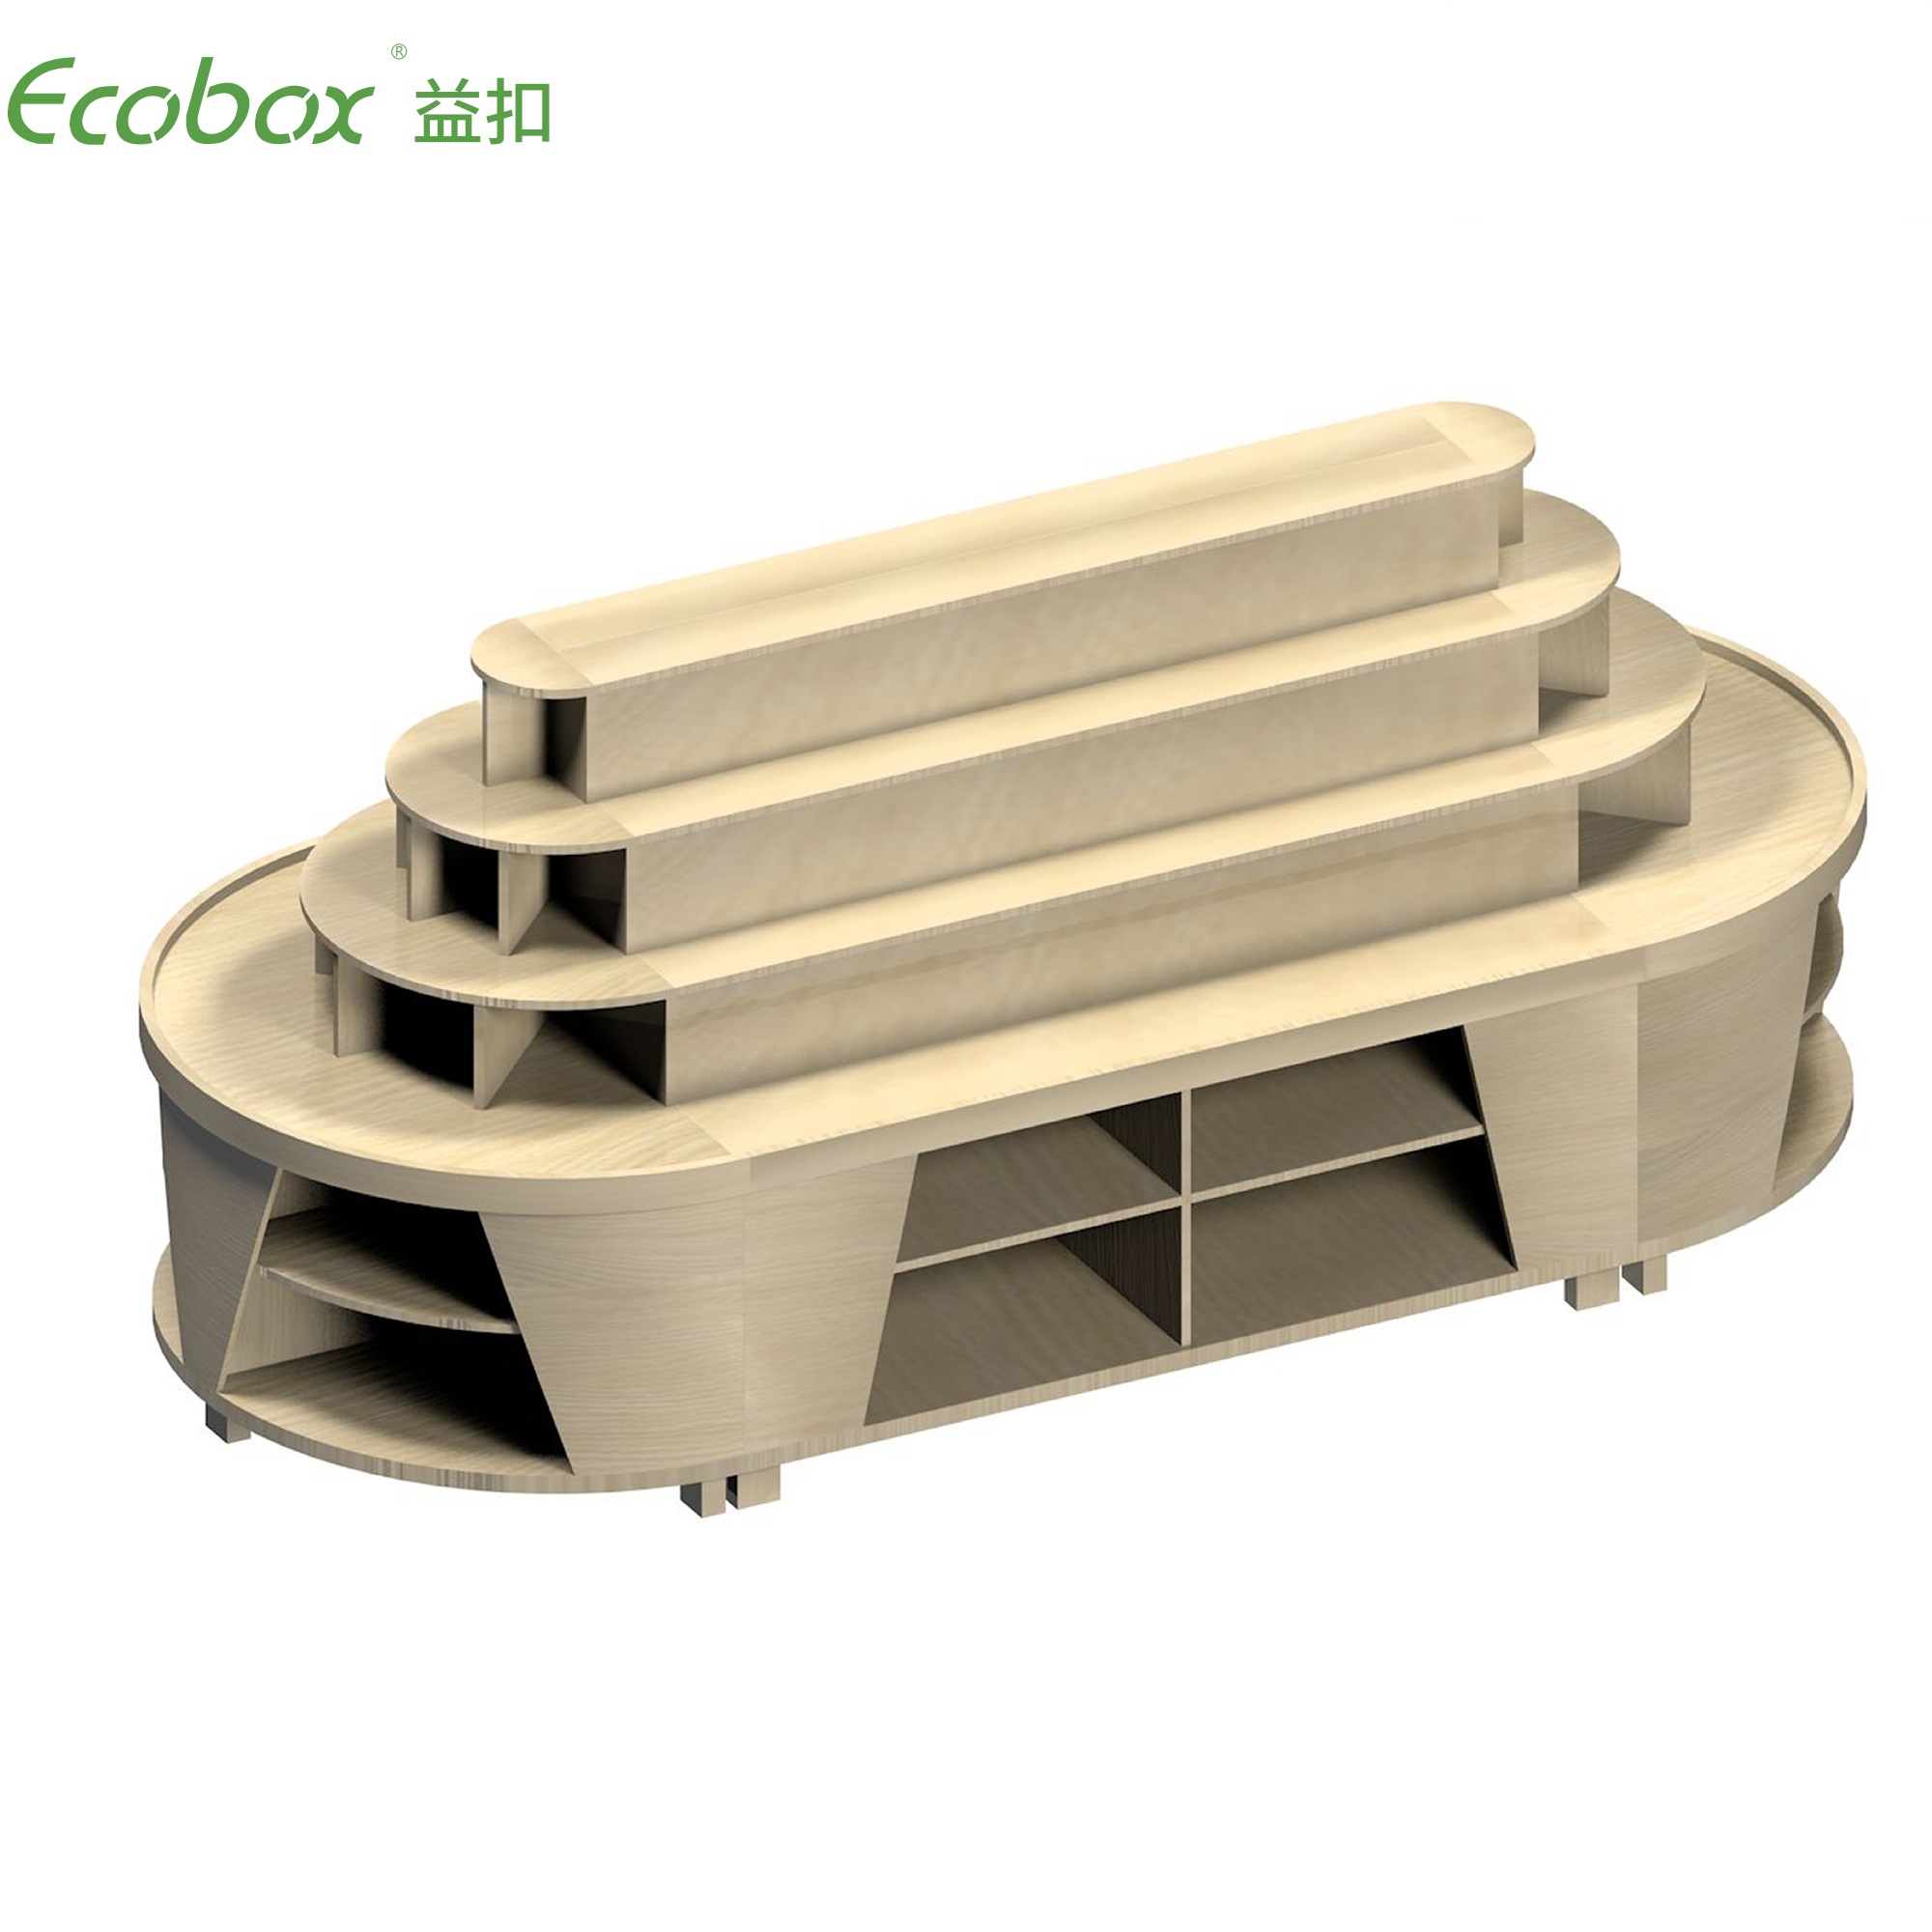 Ecobox G010 Supermarkt-Großlebensmitteldisplays mit Ecobox-Supermarktbehältern